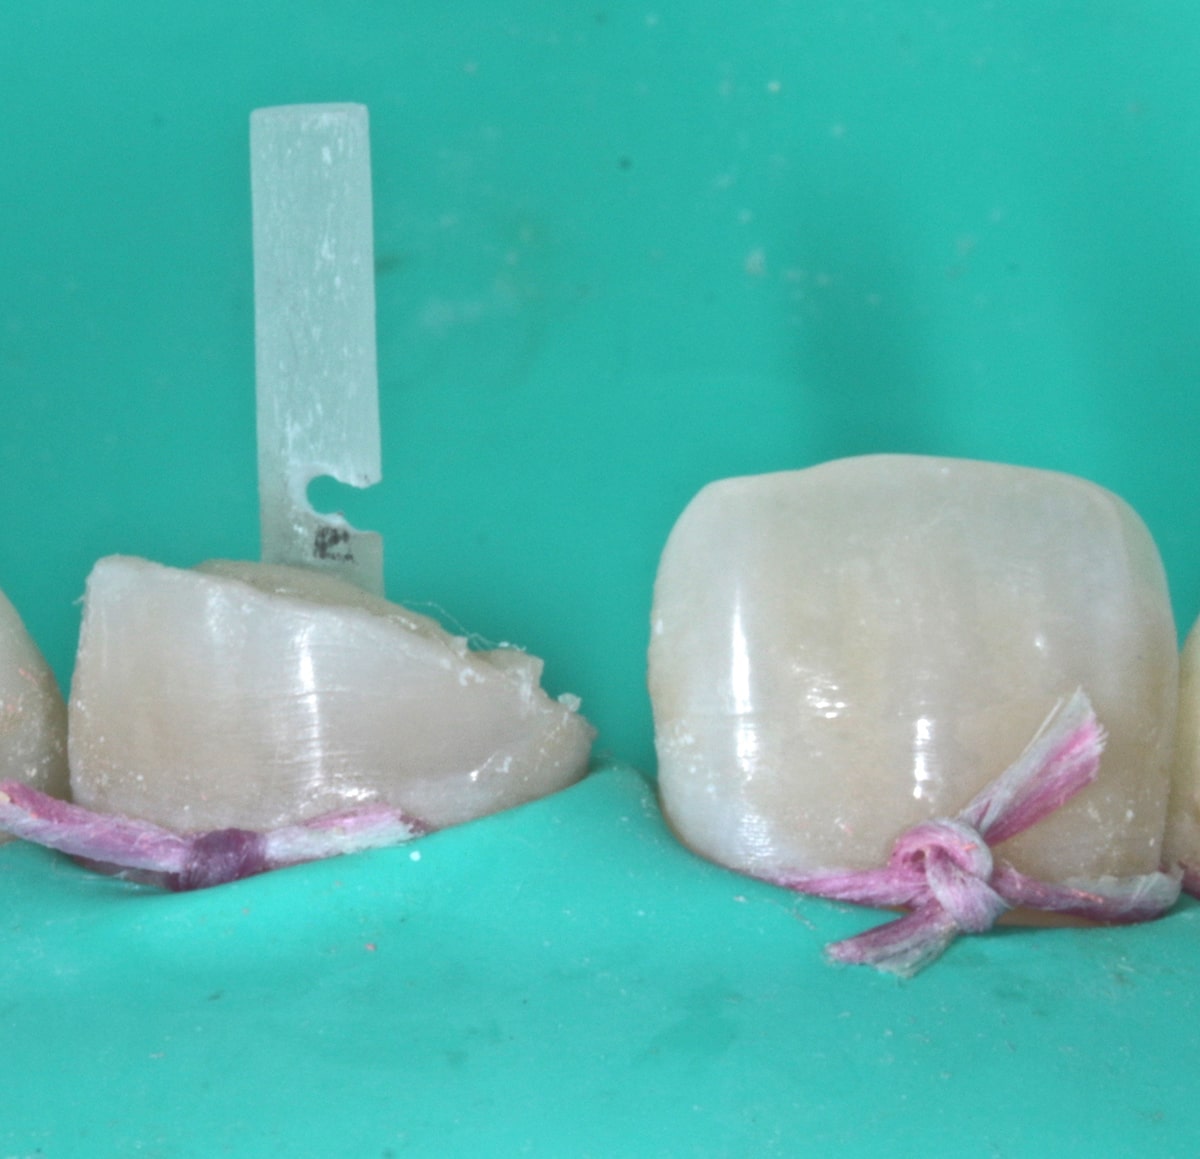 Colocación de poste Whitepost de 1mm de diametro previa confeccion de muesca a nivel coronal para recorte del excedente y posterior cementación. (Figura 12).